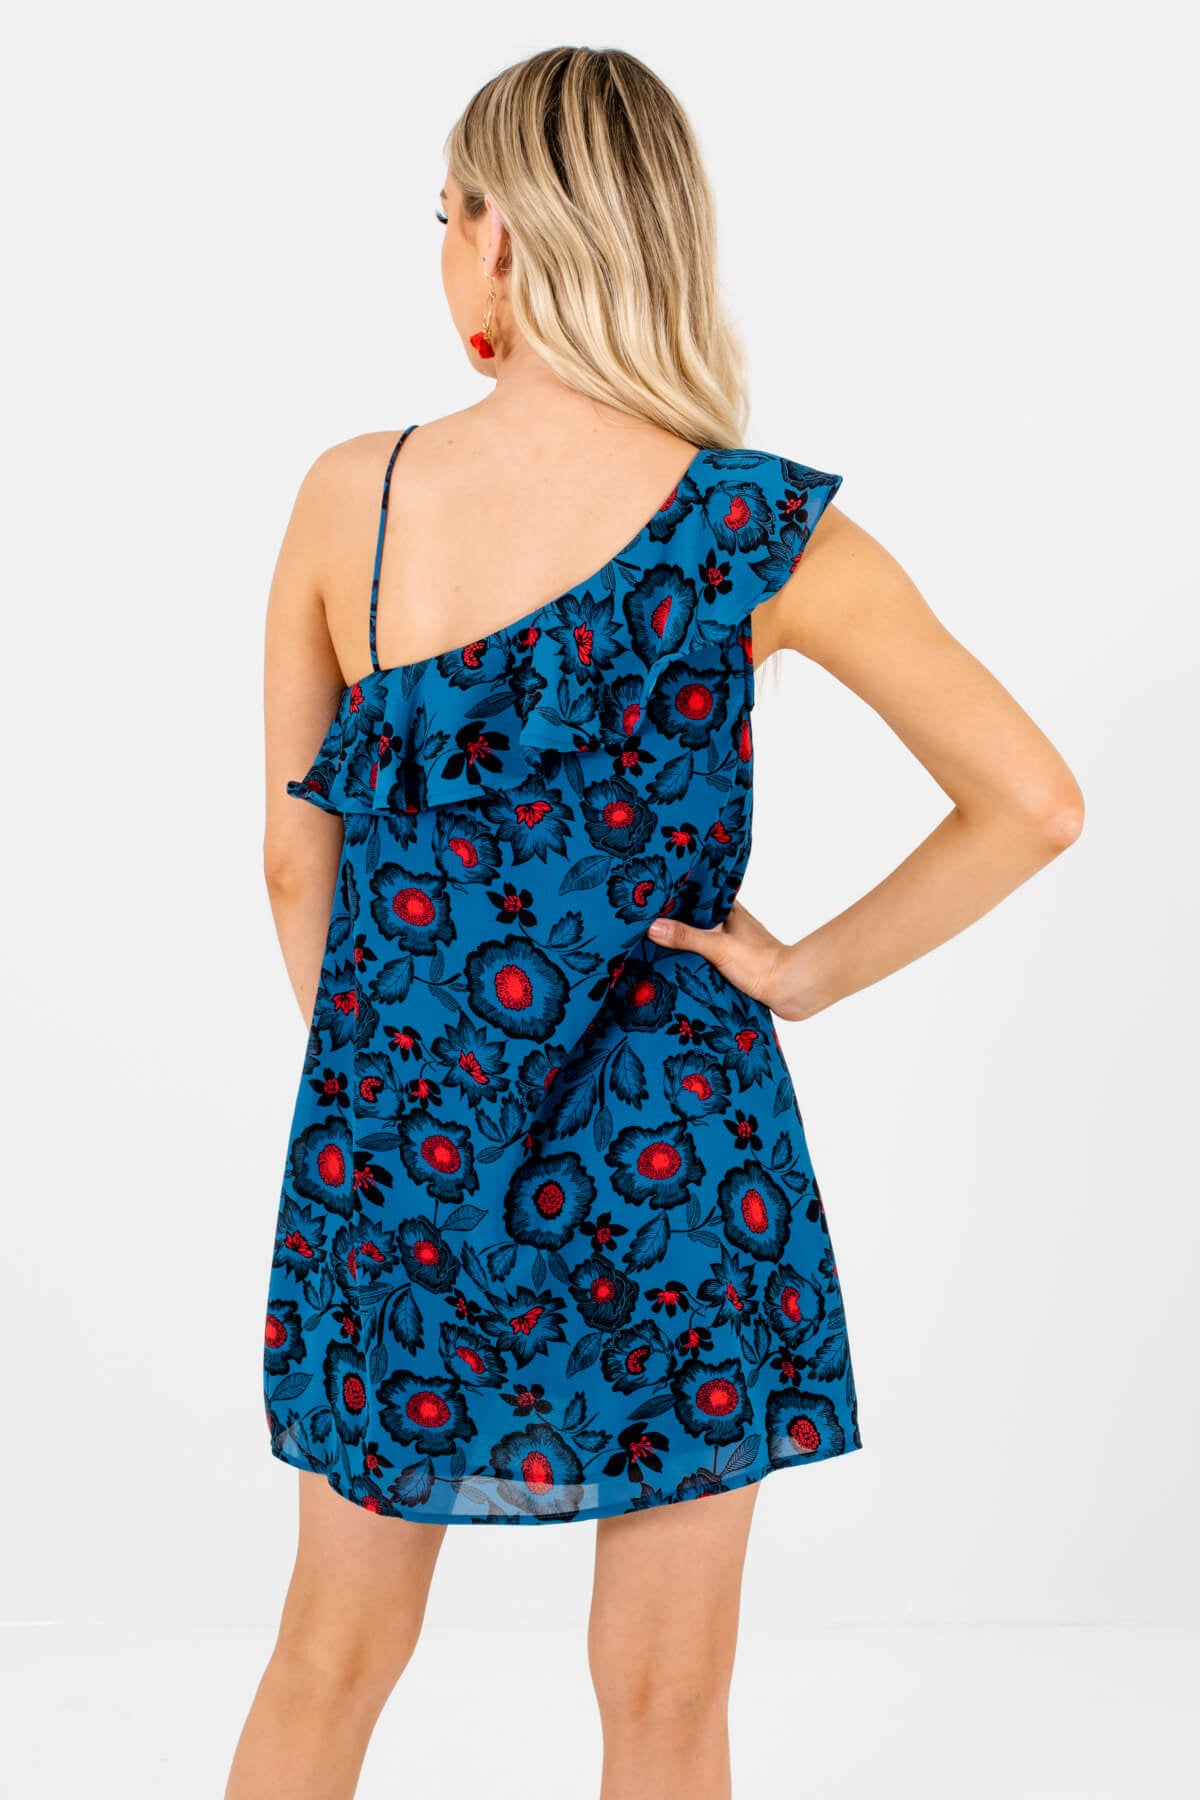 Women's Teal Blue Unique Strap Boutique Mini Dress